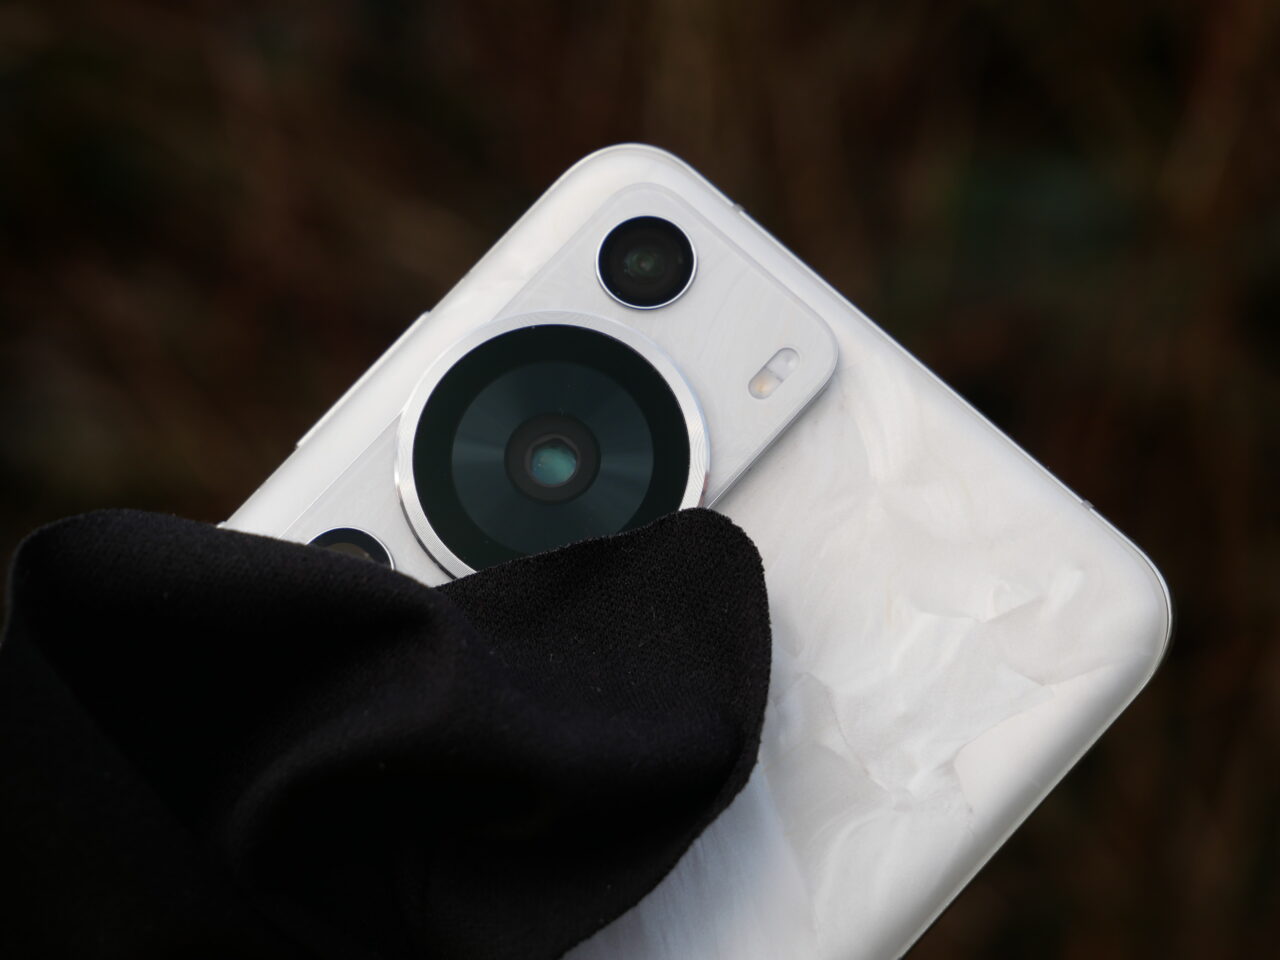 Tylny aparat fotograficzny smartfona z trzema obiektywami i lampą błyskową, czyścimy bawełnianą ściereczką, na nieostro tło.